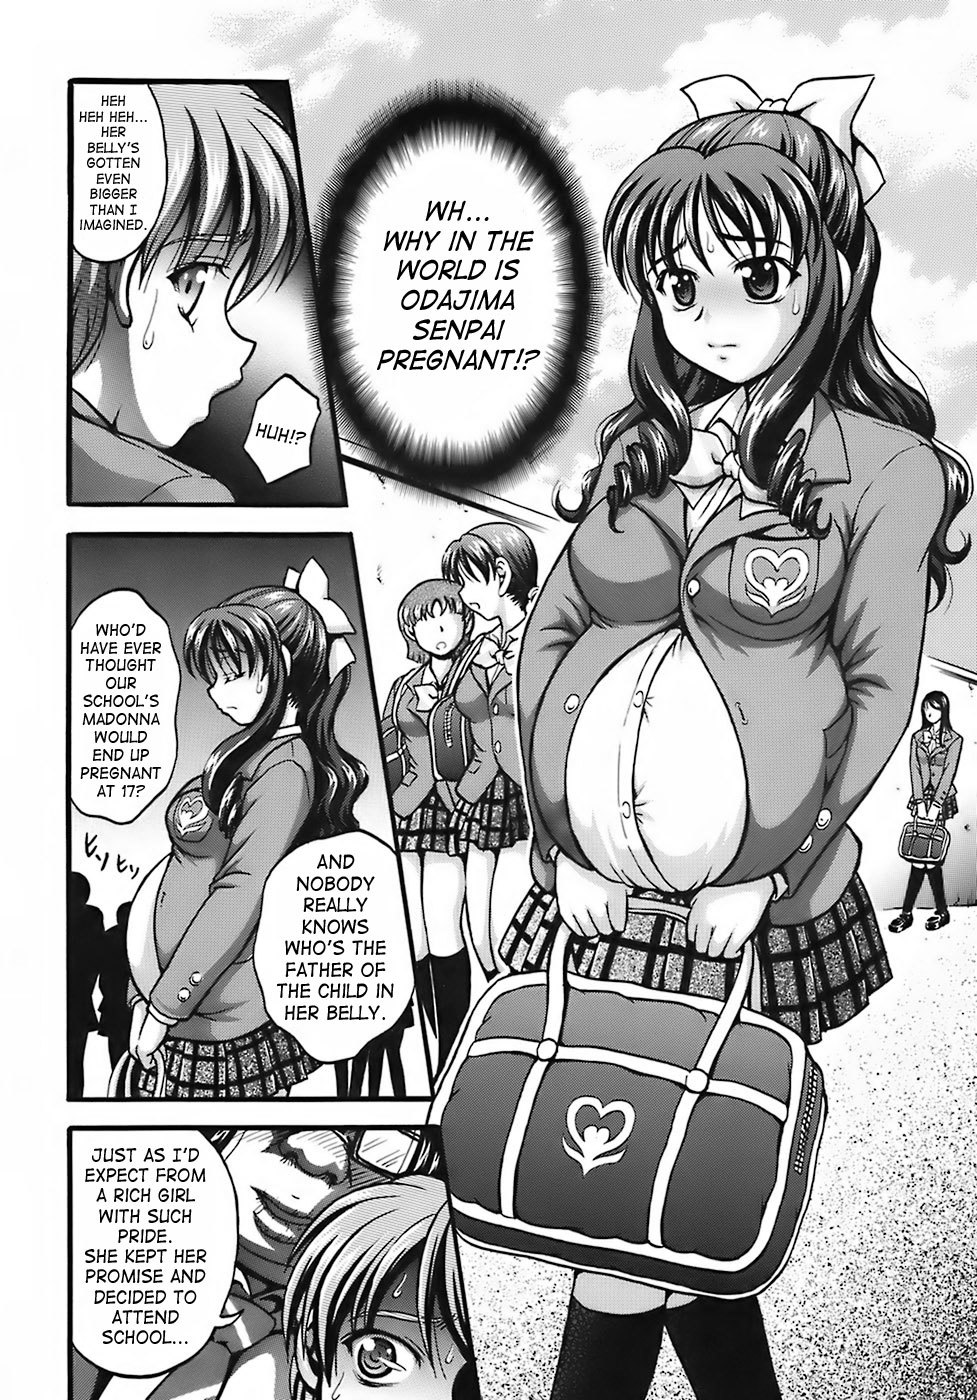 Milk Hunters 6 futari wa pretty cure 22 hentai manga